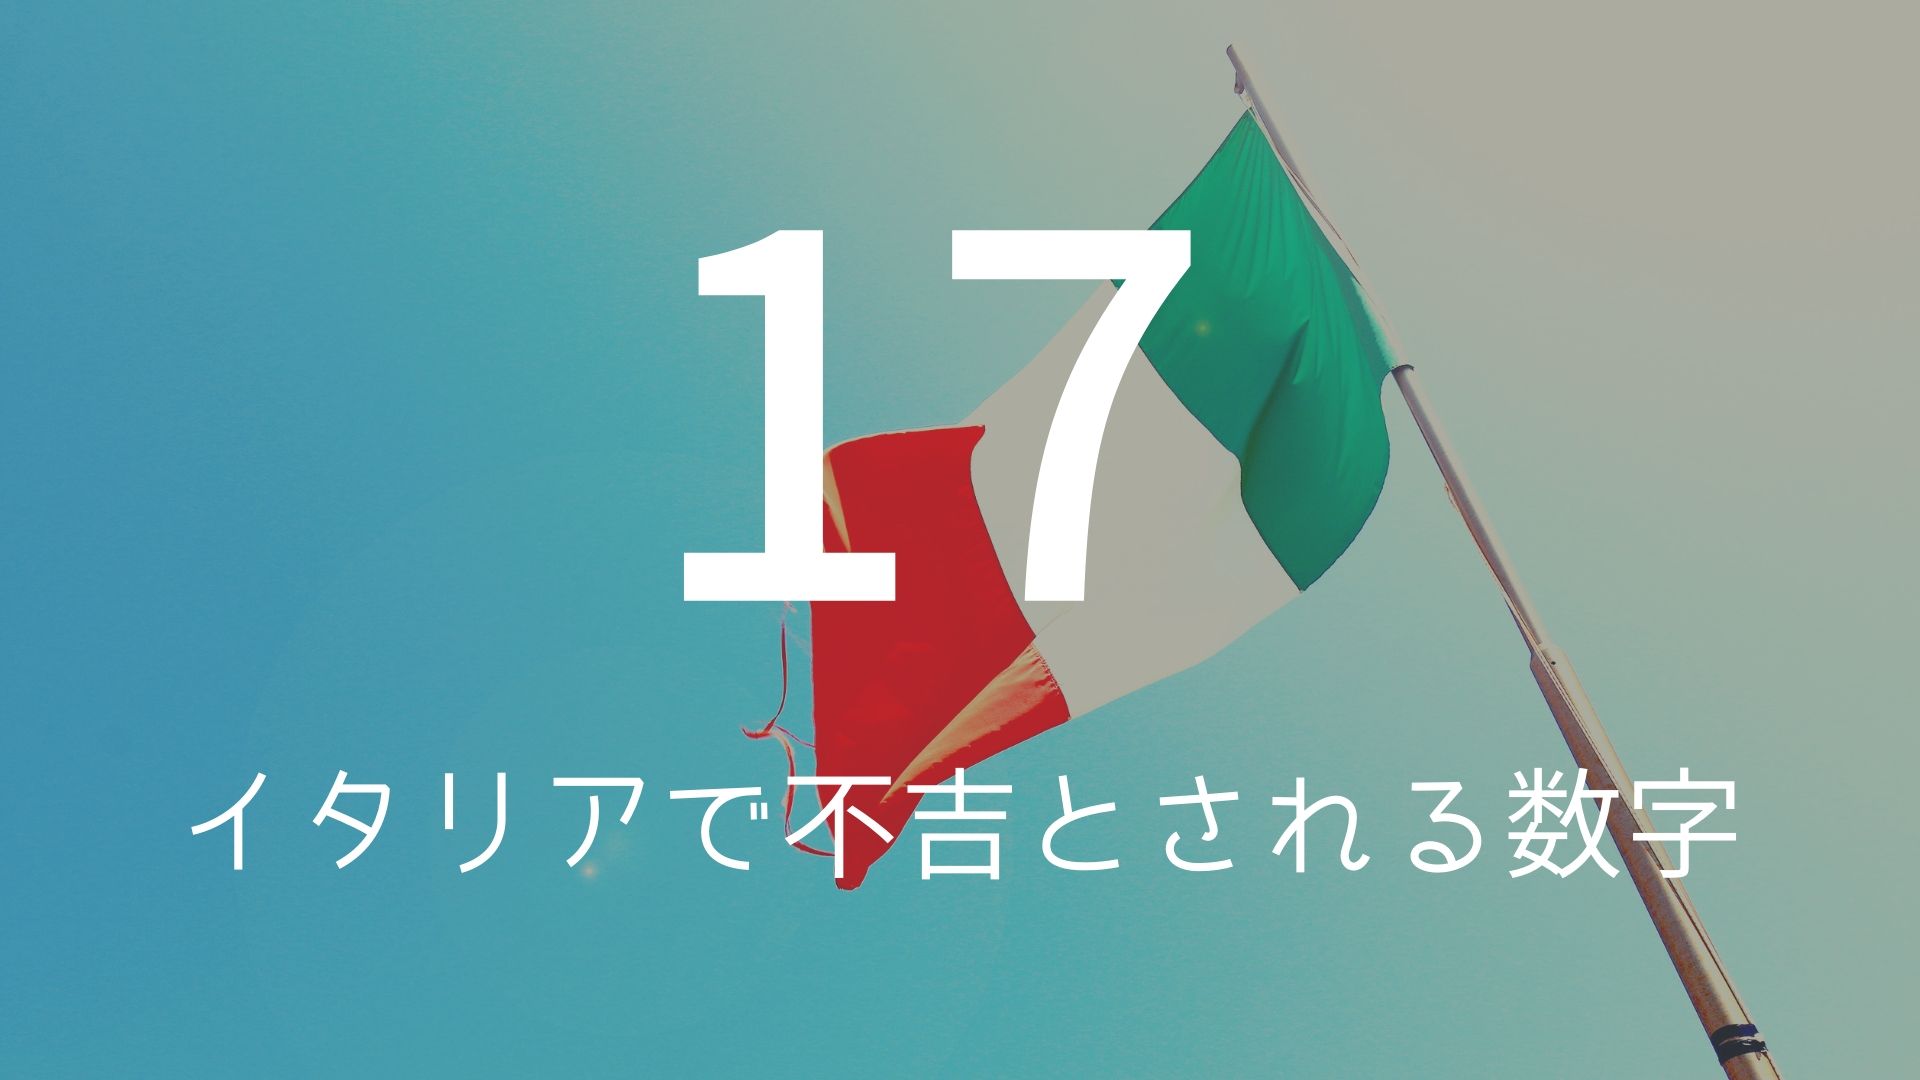 「17」 >>> イタリアで不吉とされる数字。